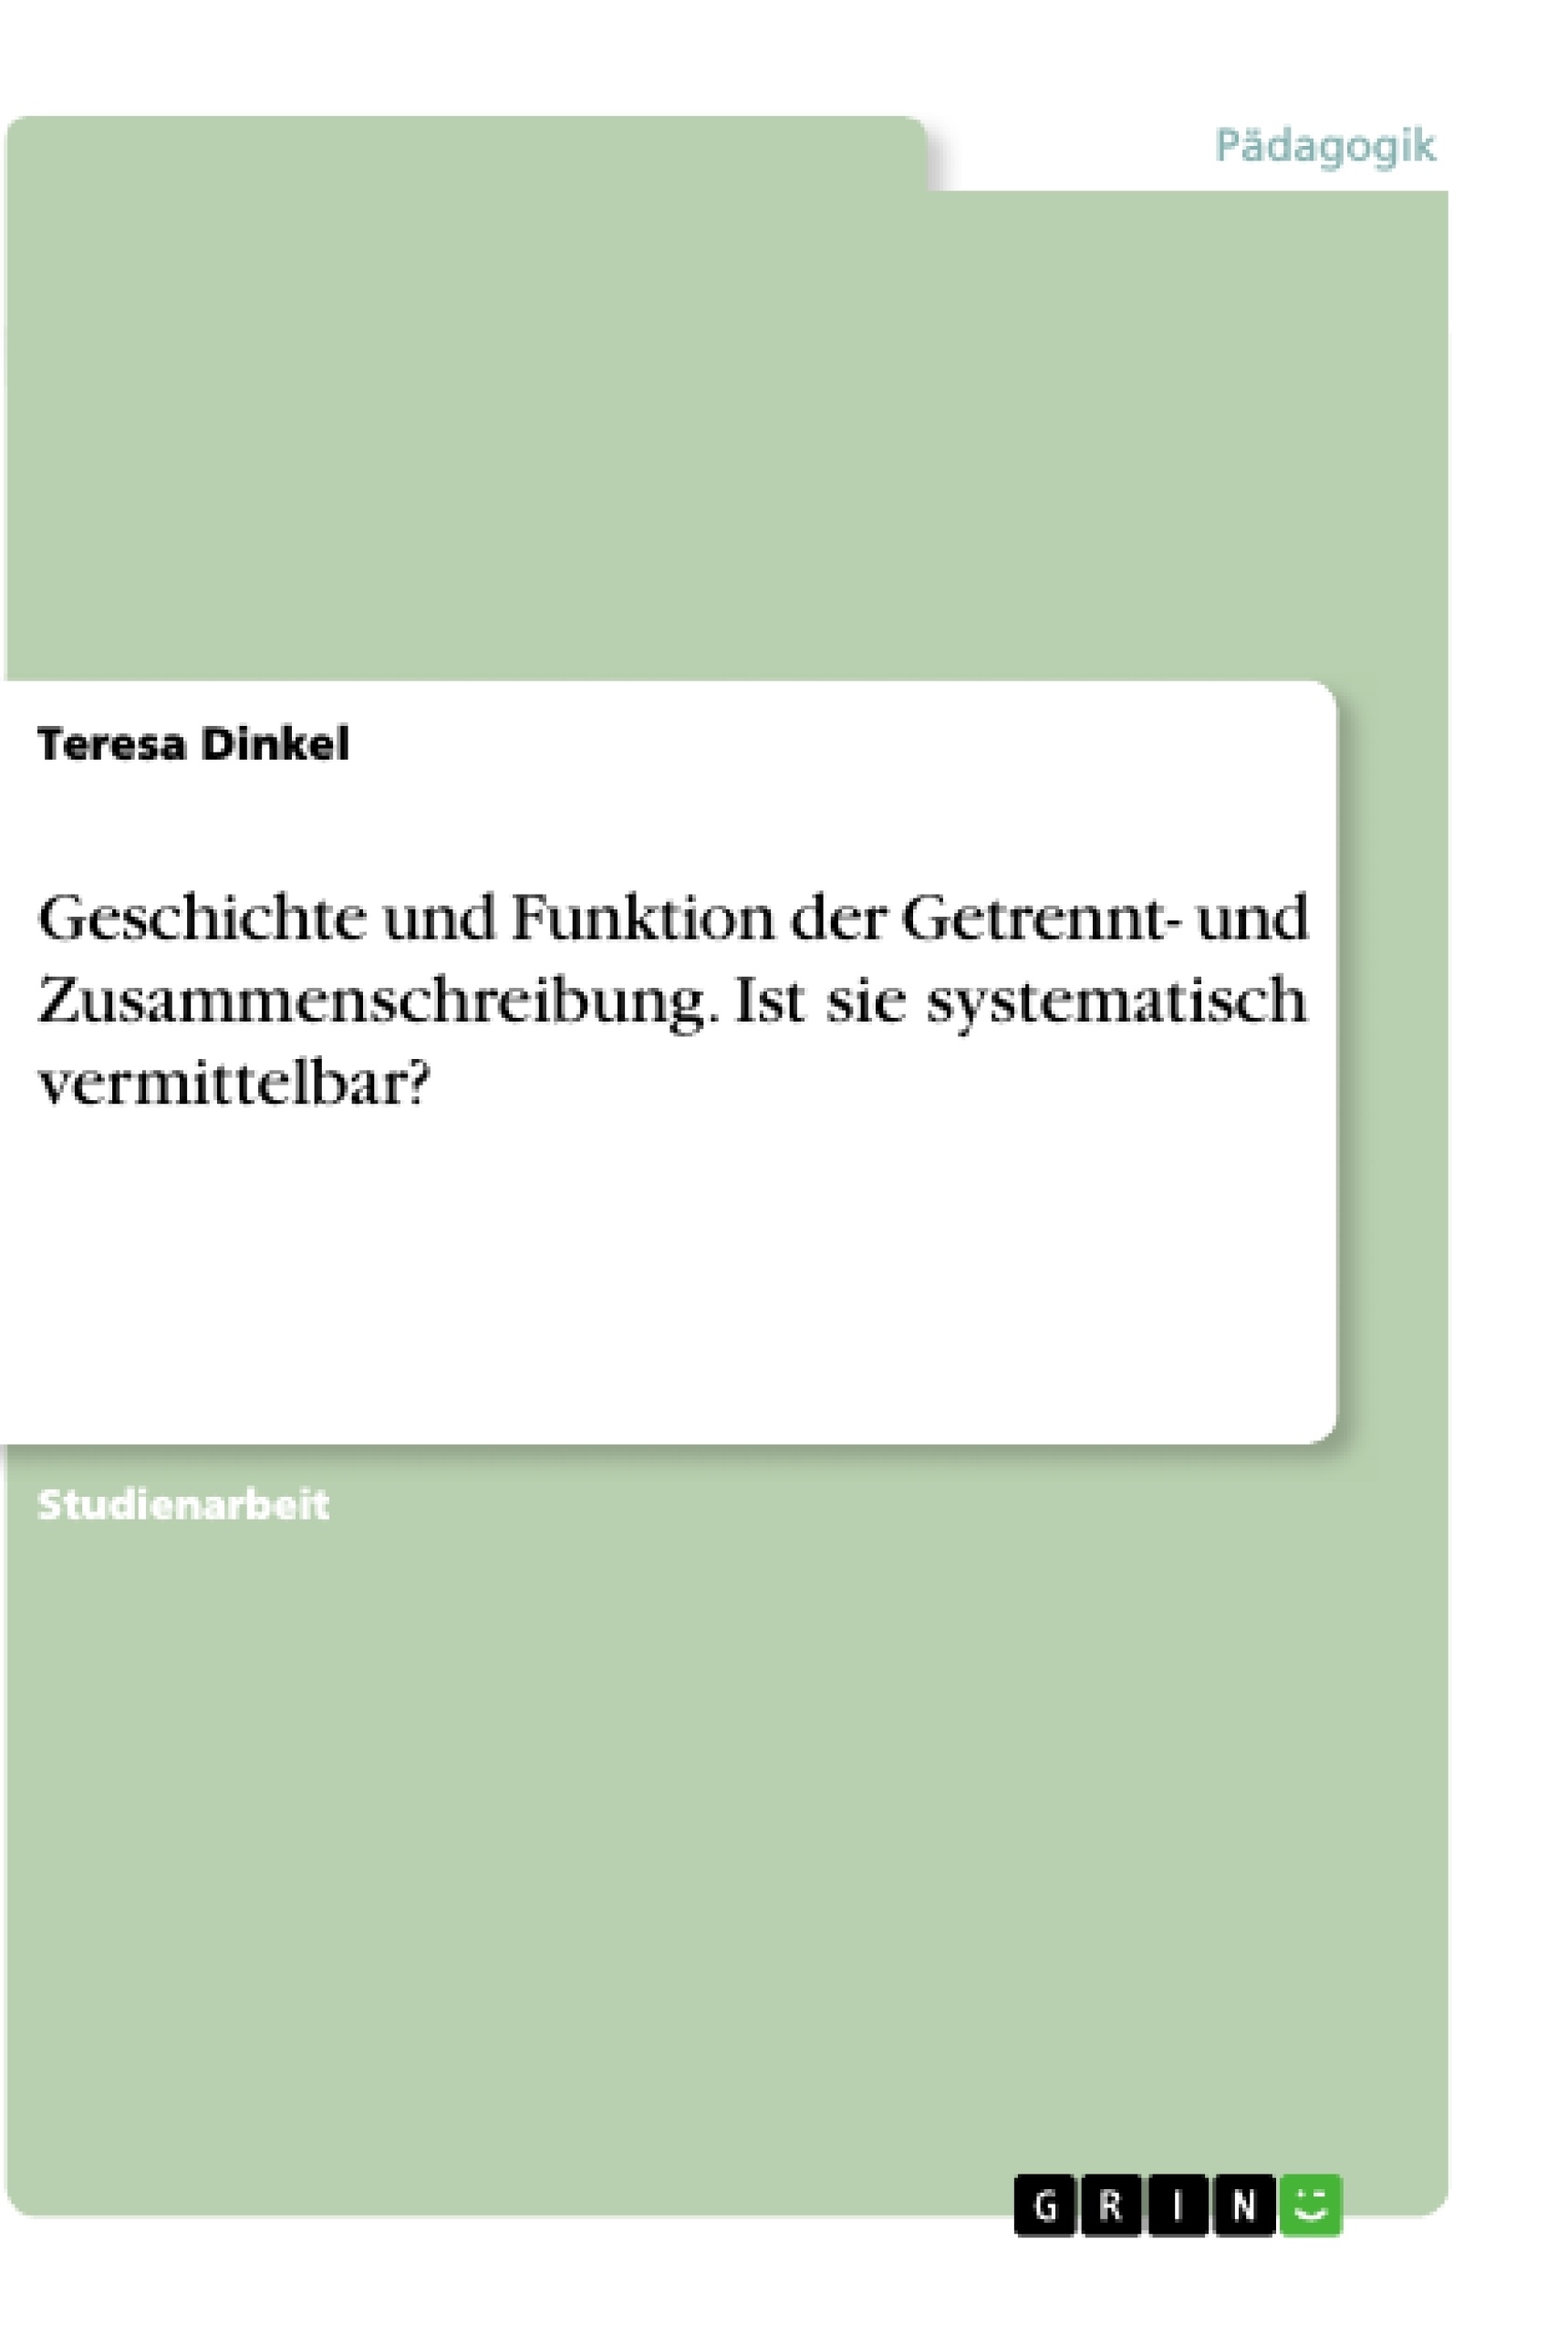 Titre: Geschichte und Funktion der Getrennt- und Zusammenschreibung. Ist sie systematisch vermittelbar?